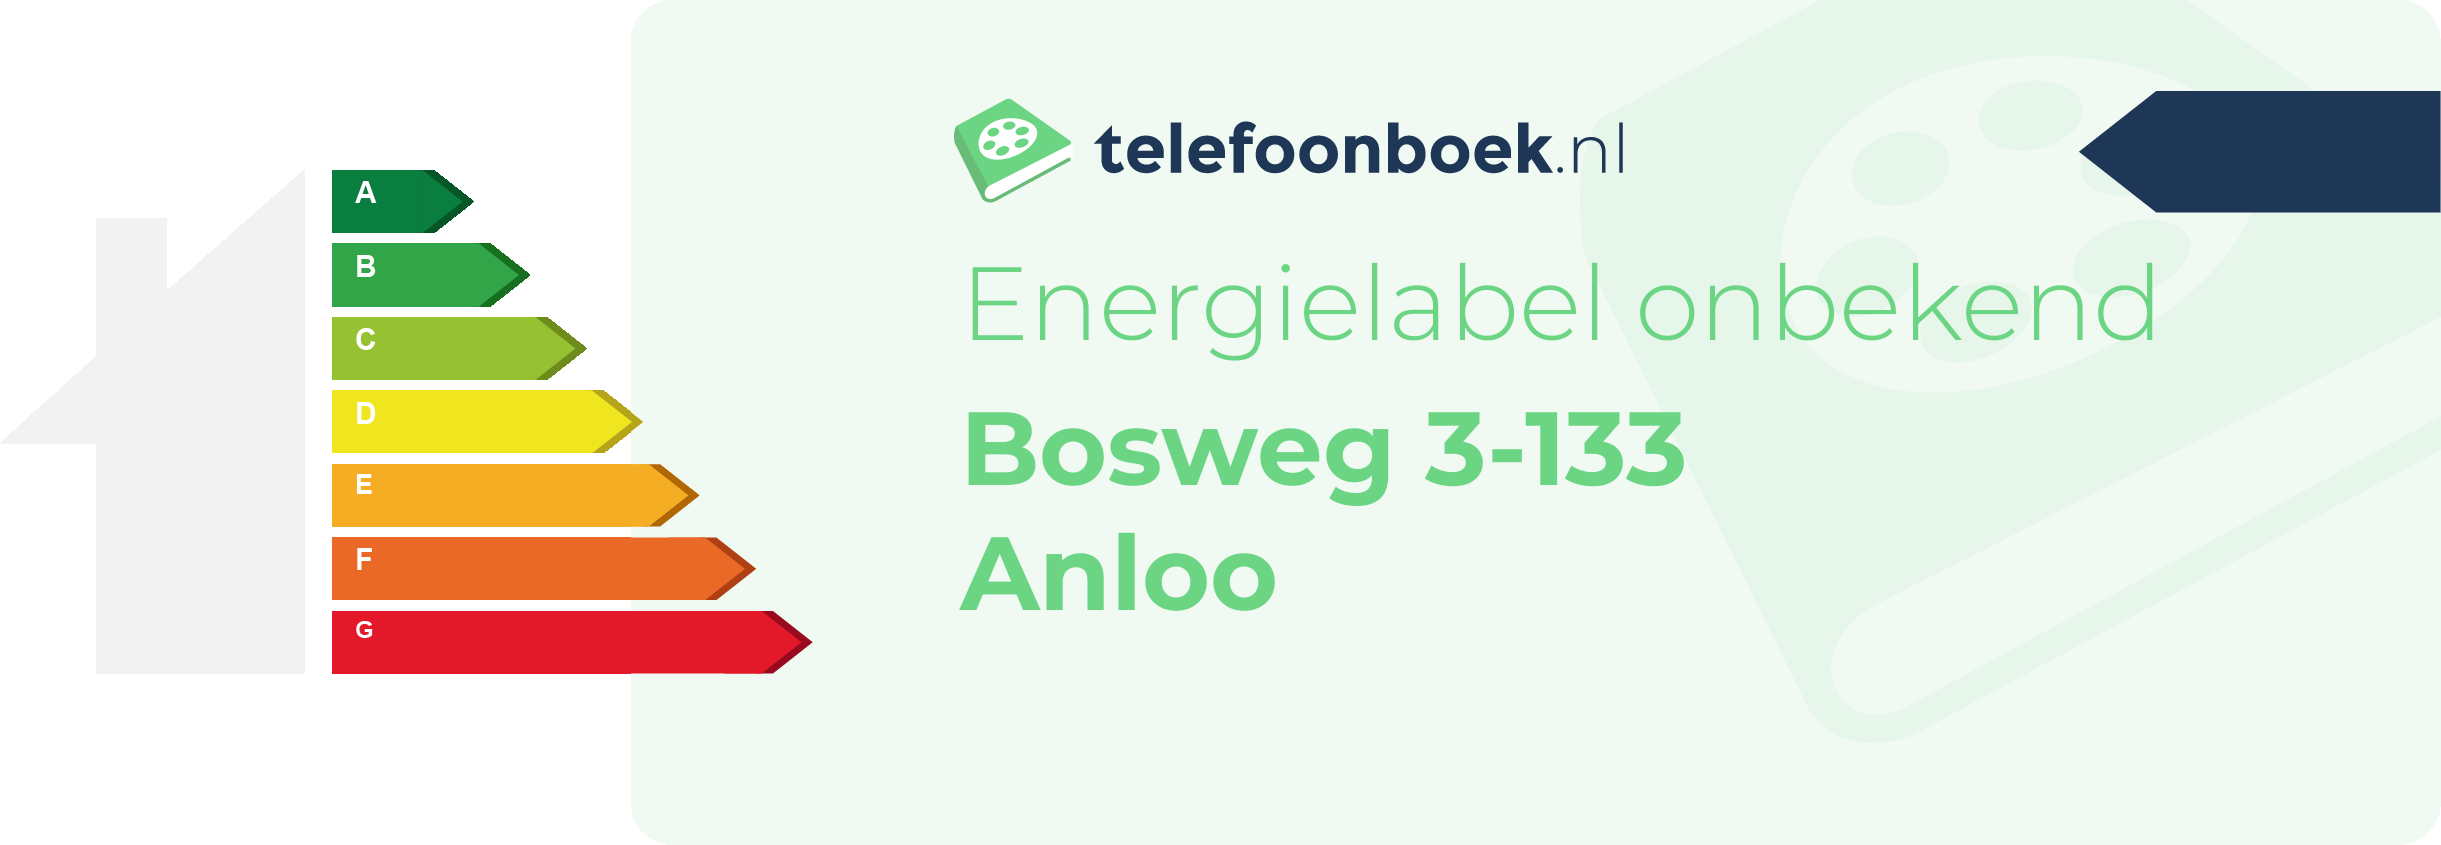 Energielabel Bosweg 3-133 Anloo